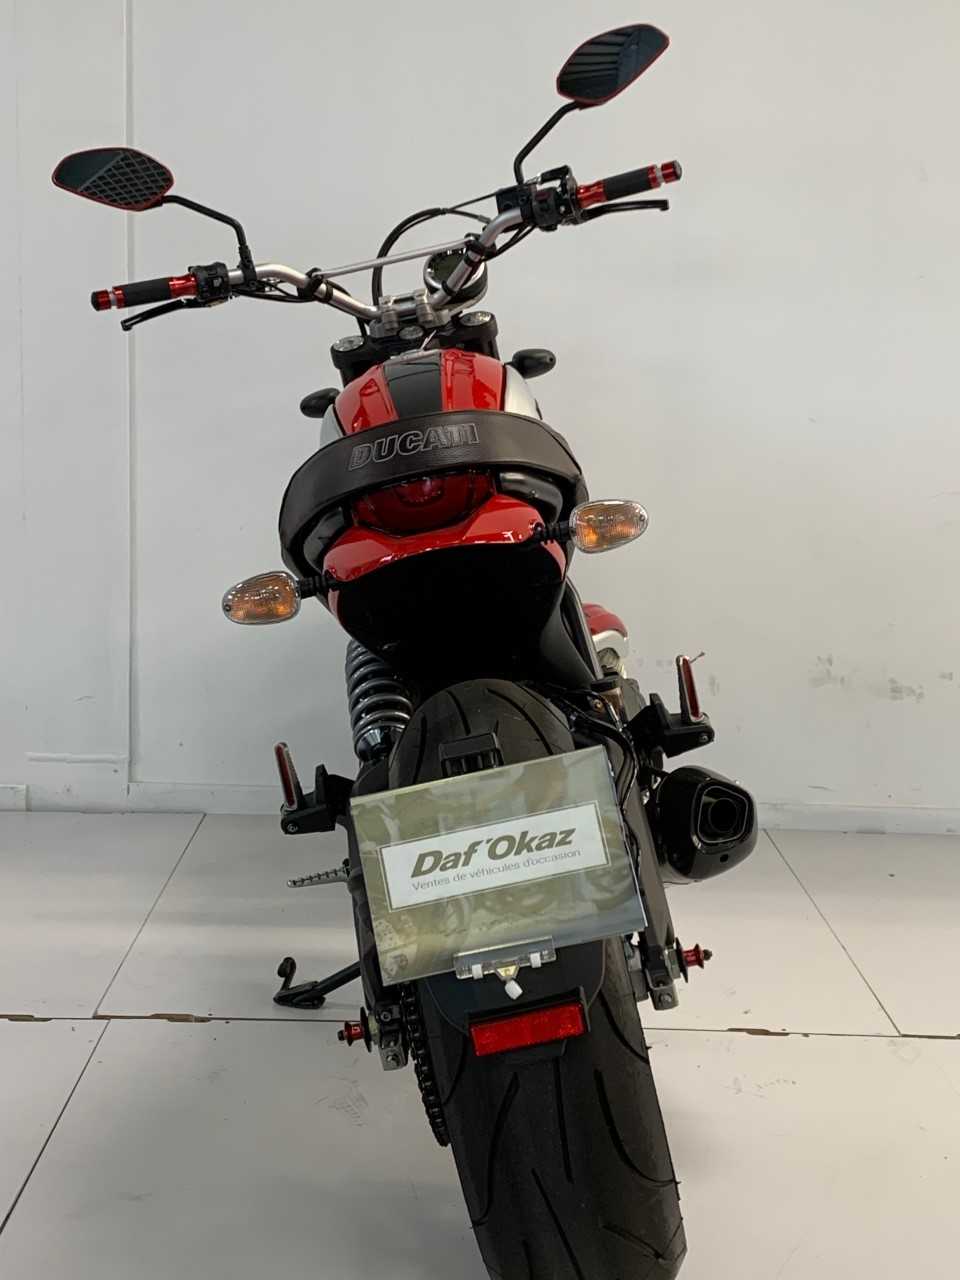 Ducati 800 Scrambler Classic 2016 vue arrière